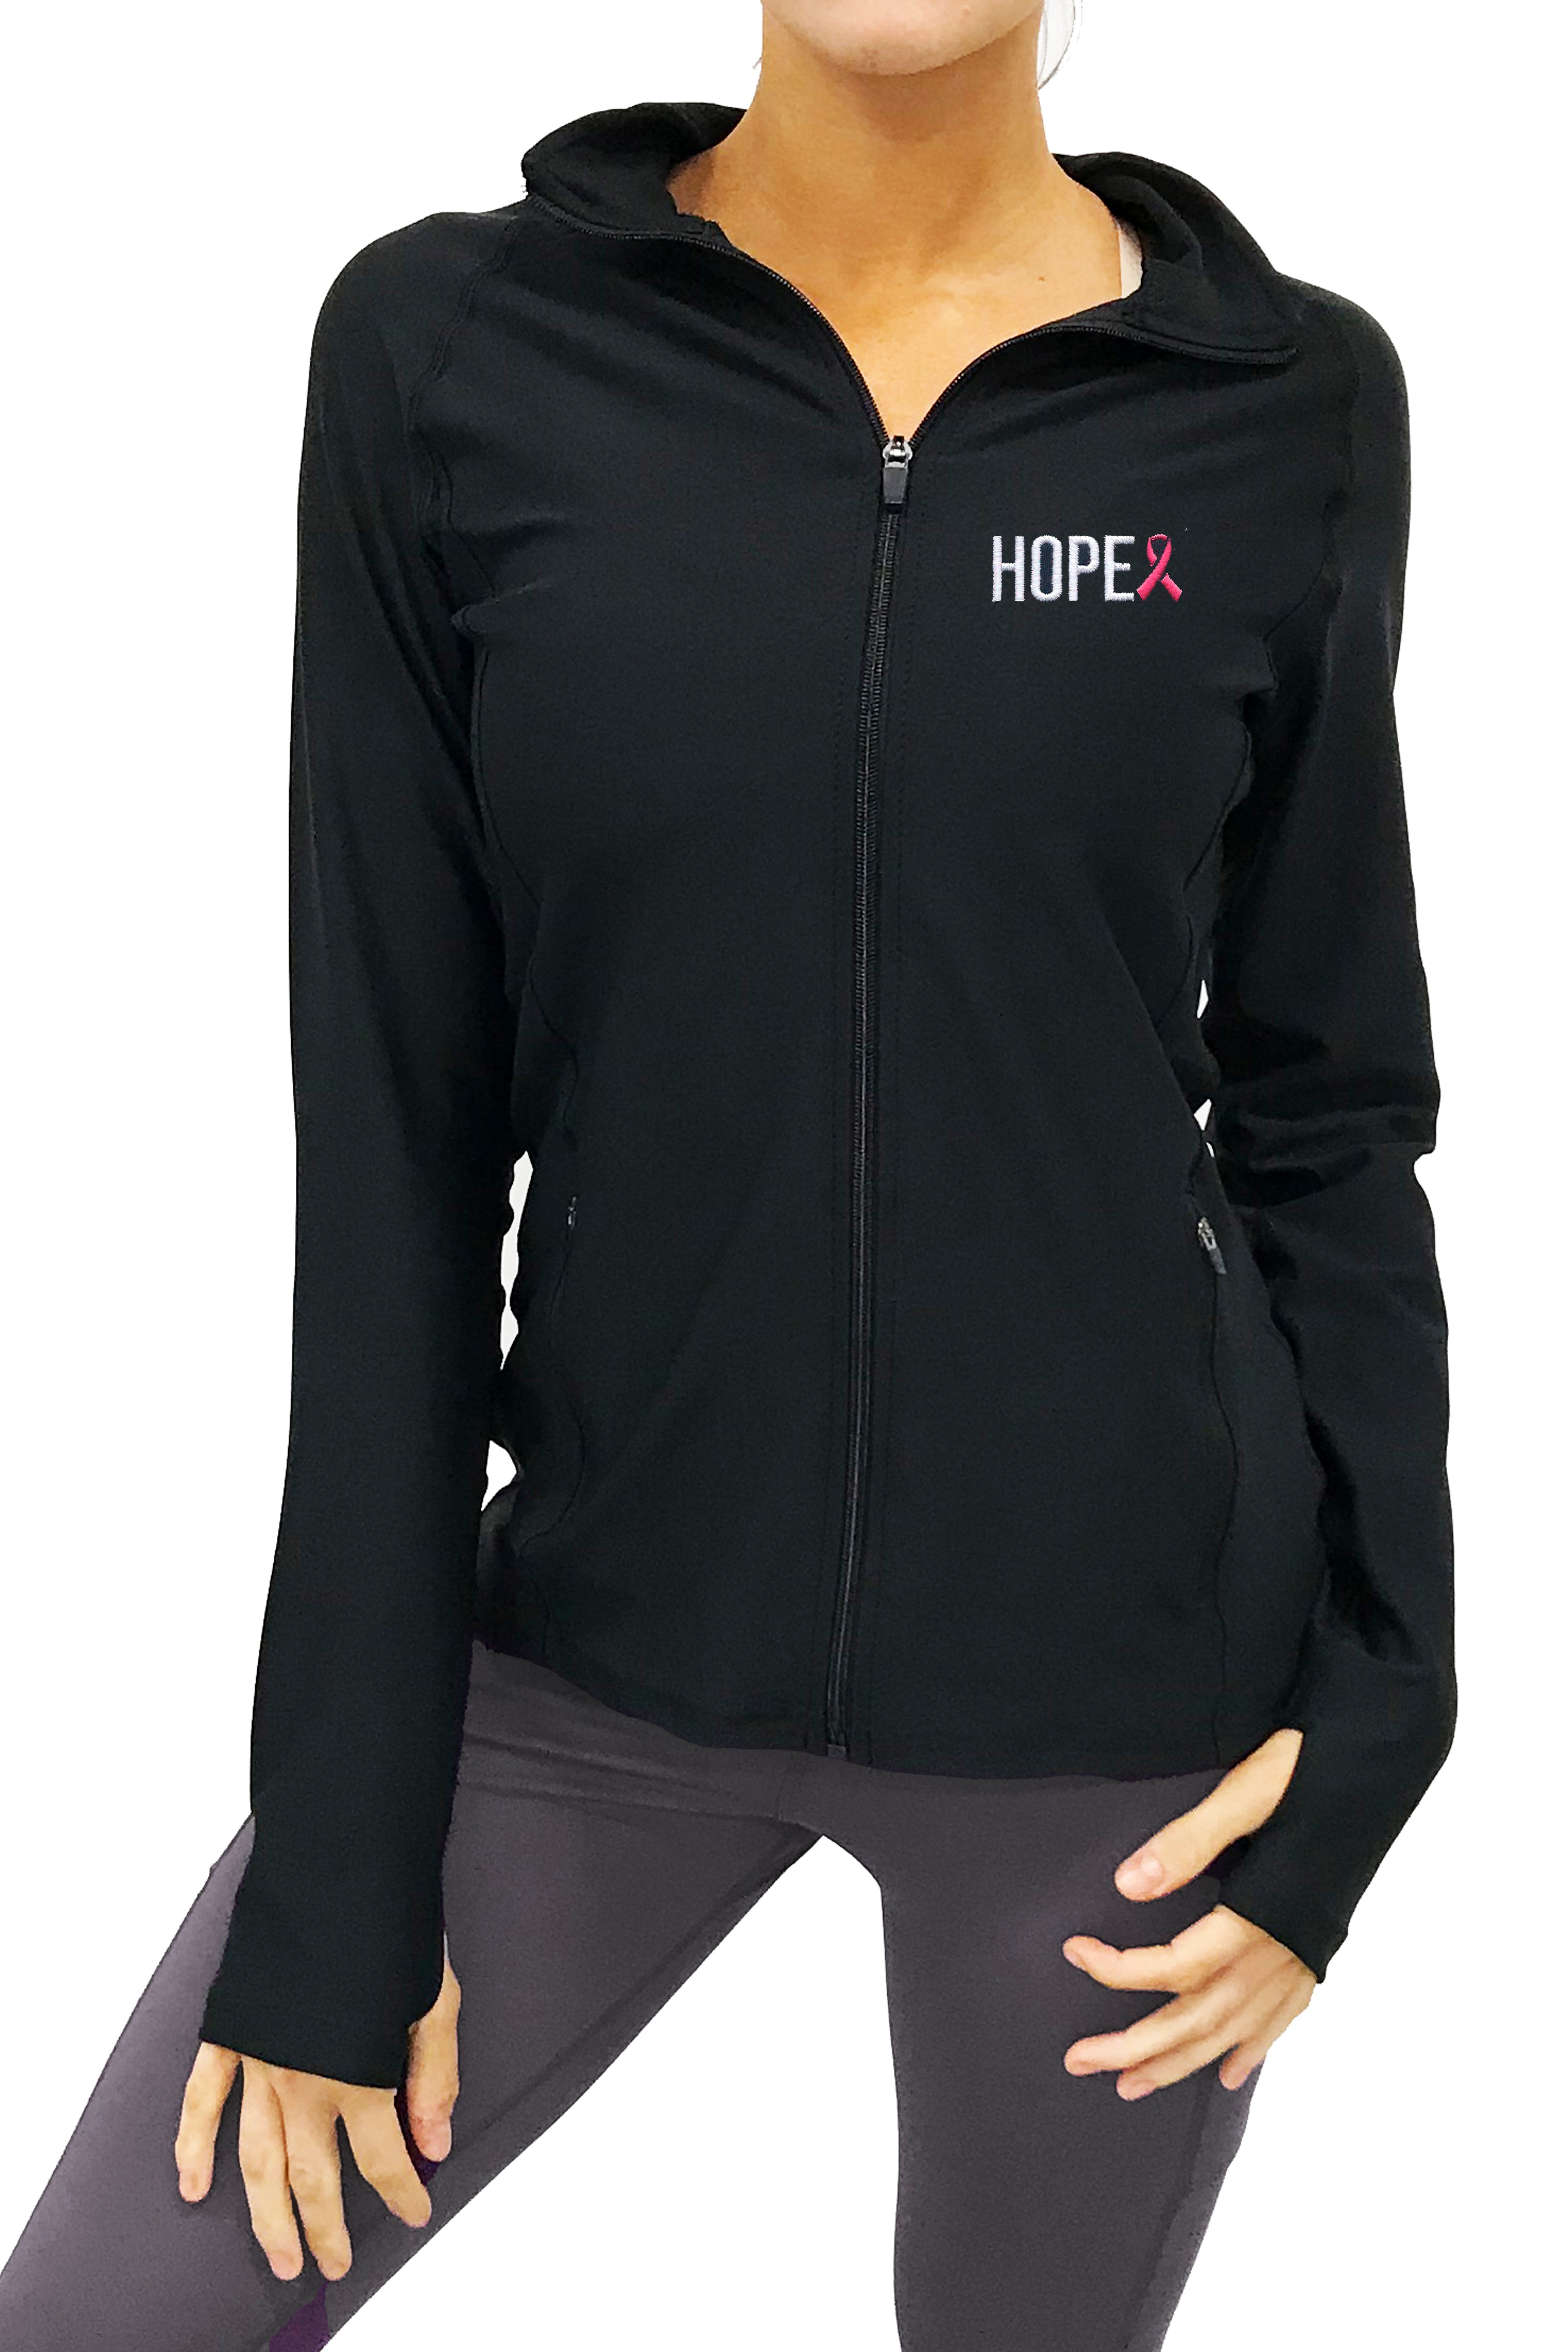 7205 - Hope Full Zip Pullover/Black